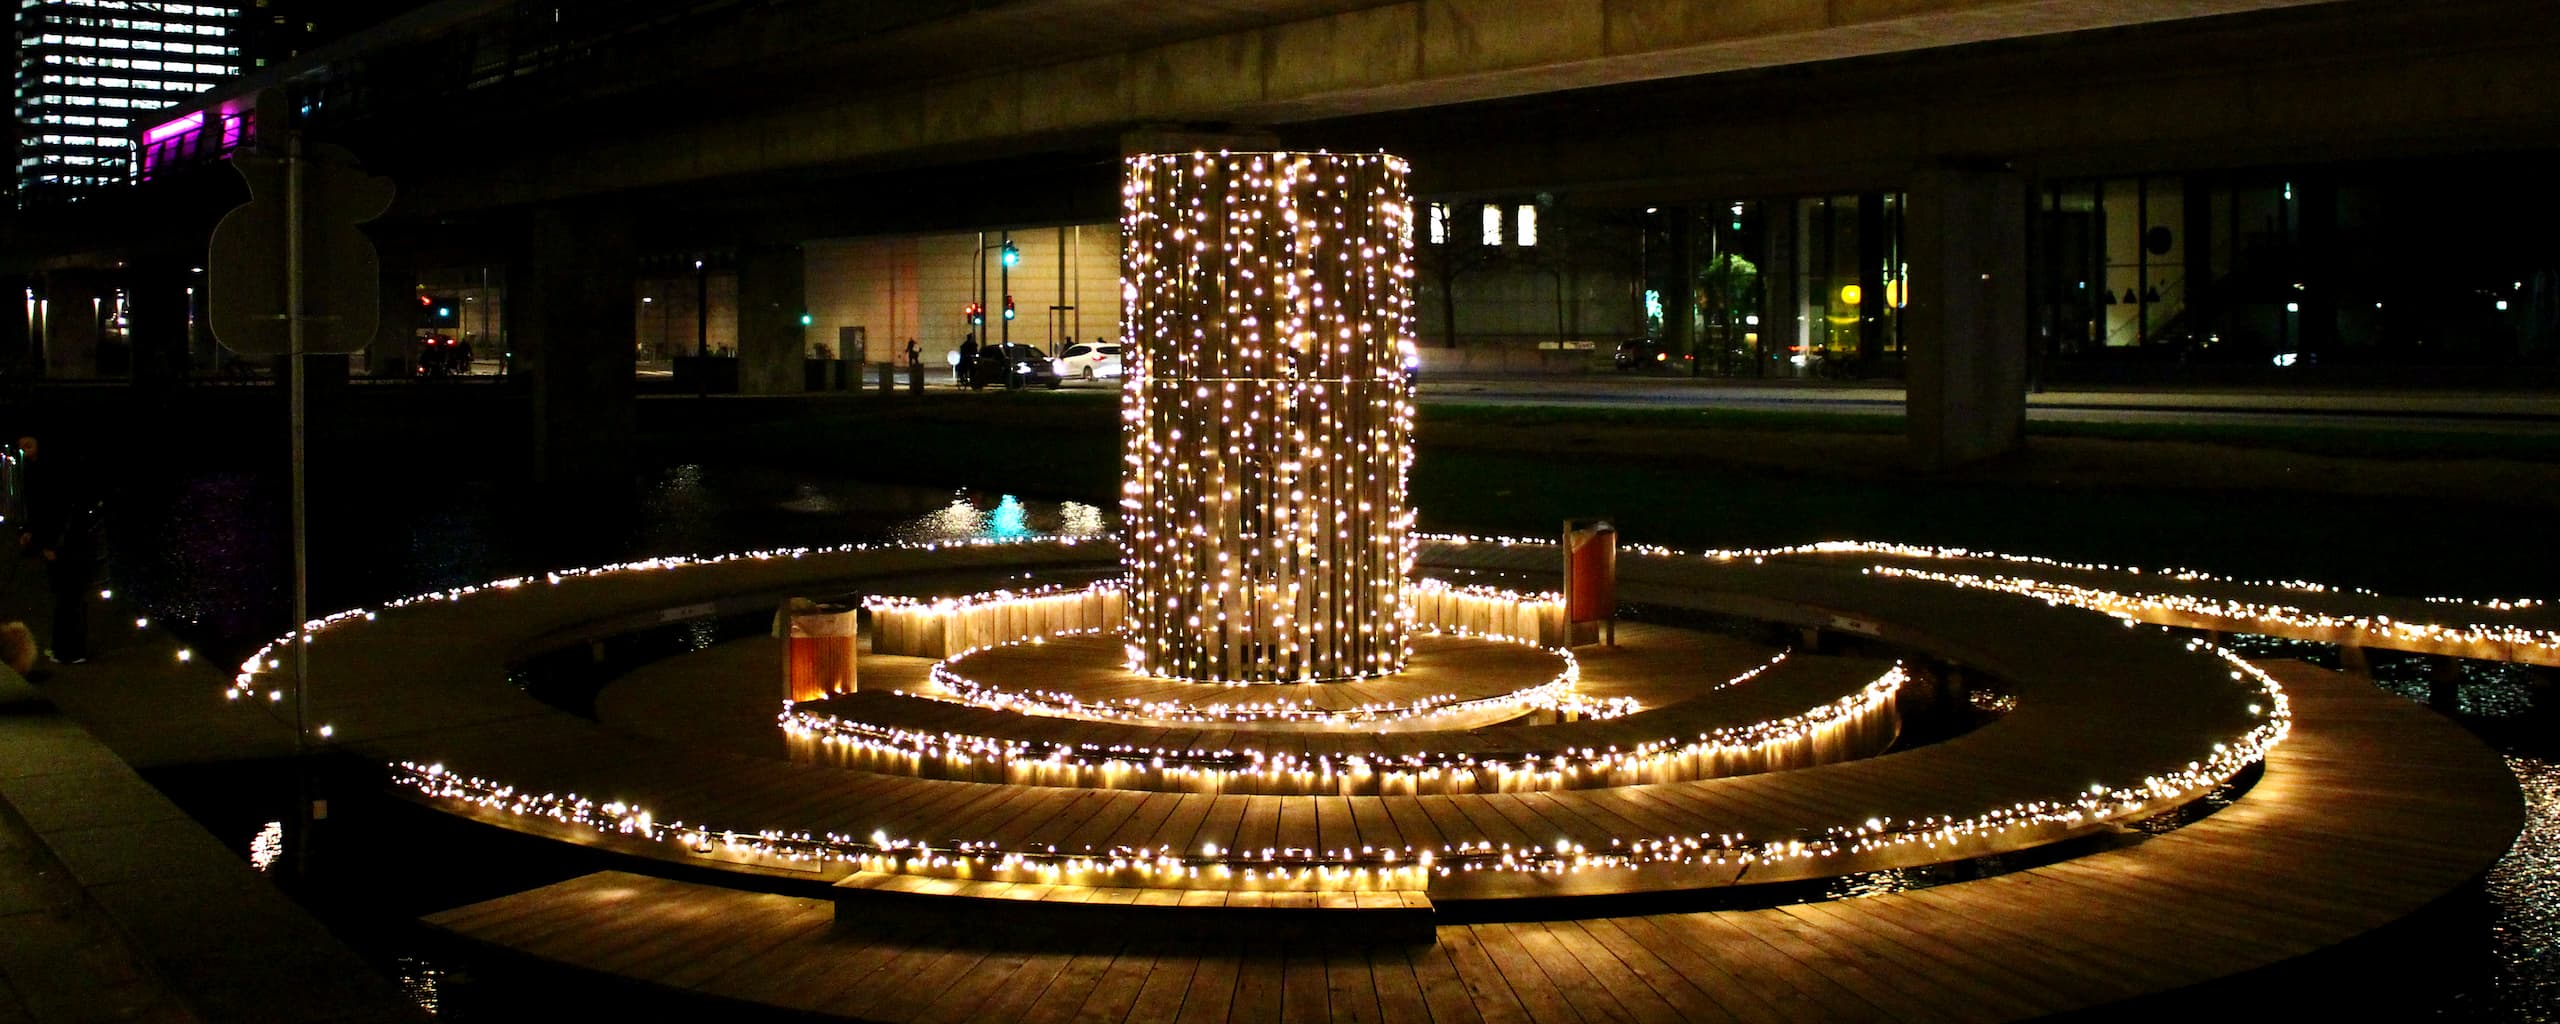 Træøen ved Ørestad Gymnasium iklædt julelys og vinterlys i forbindelse med grundejerforeningernes julehygge i Byparken.